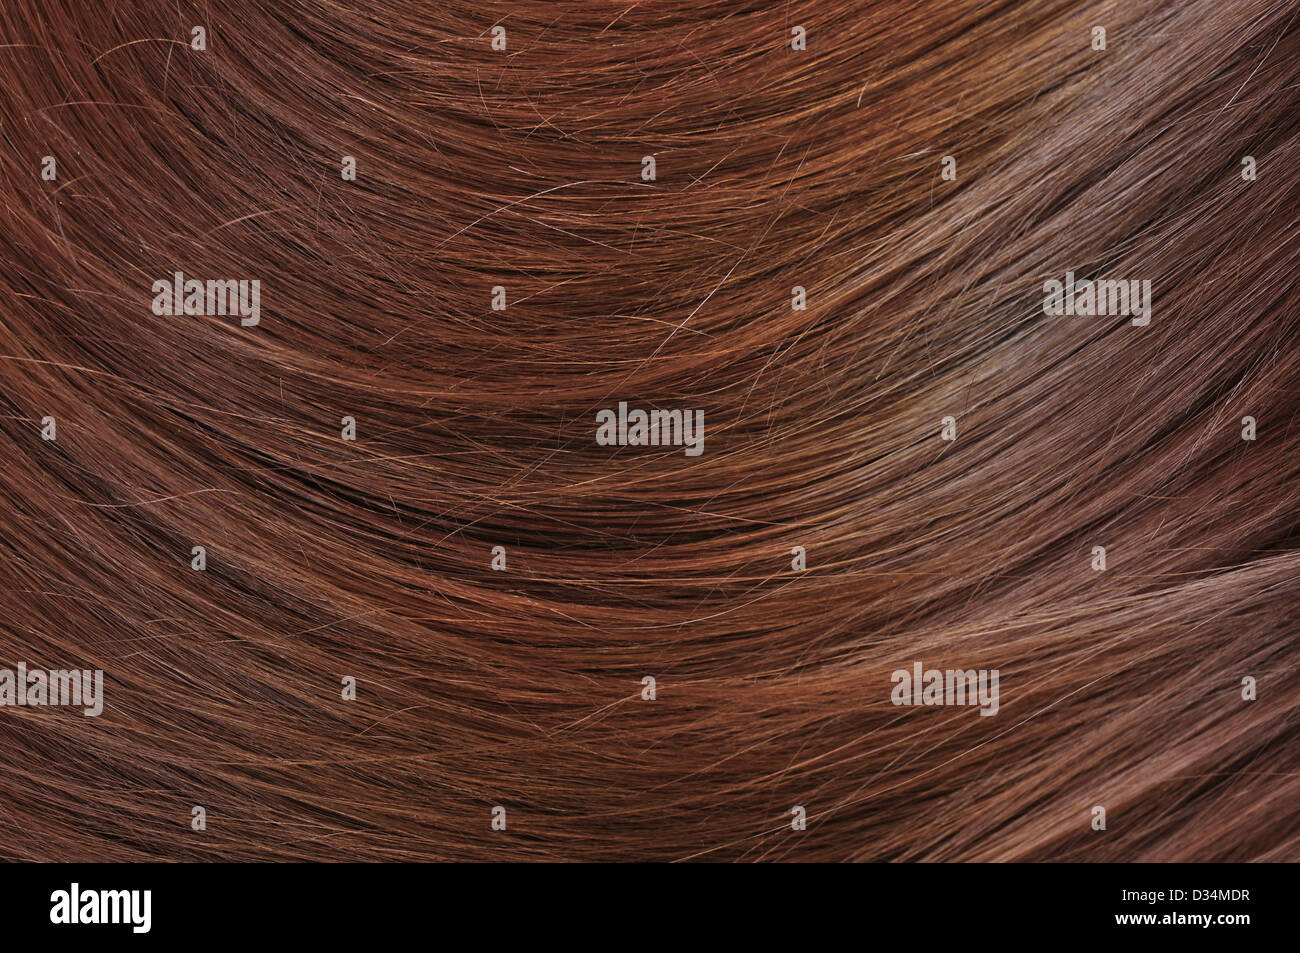 Belle texture des cheveux brillants sains closeup Banque D'Images